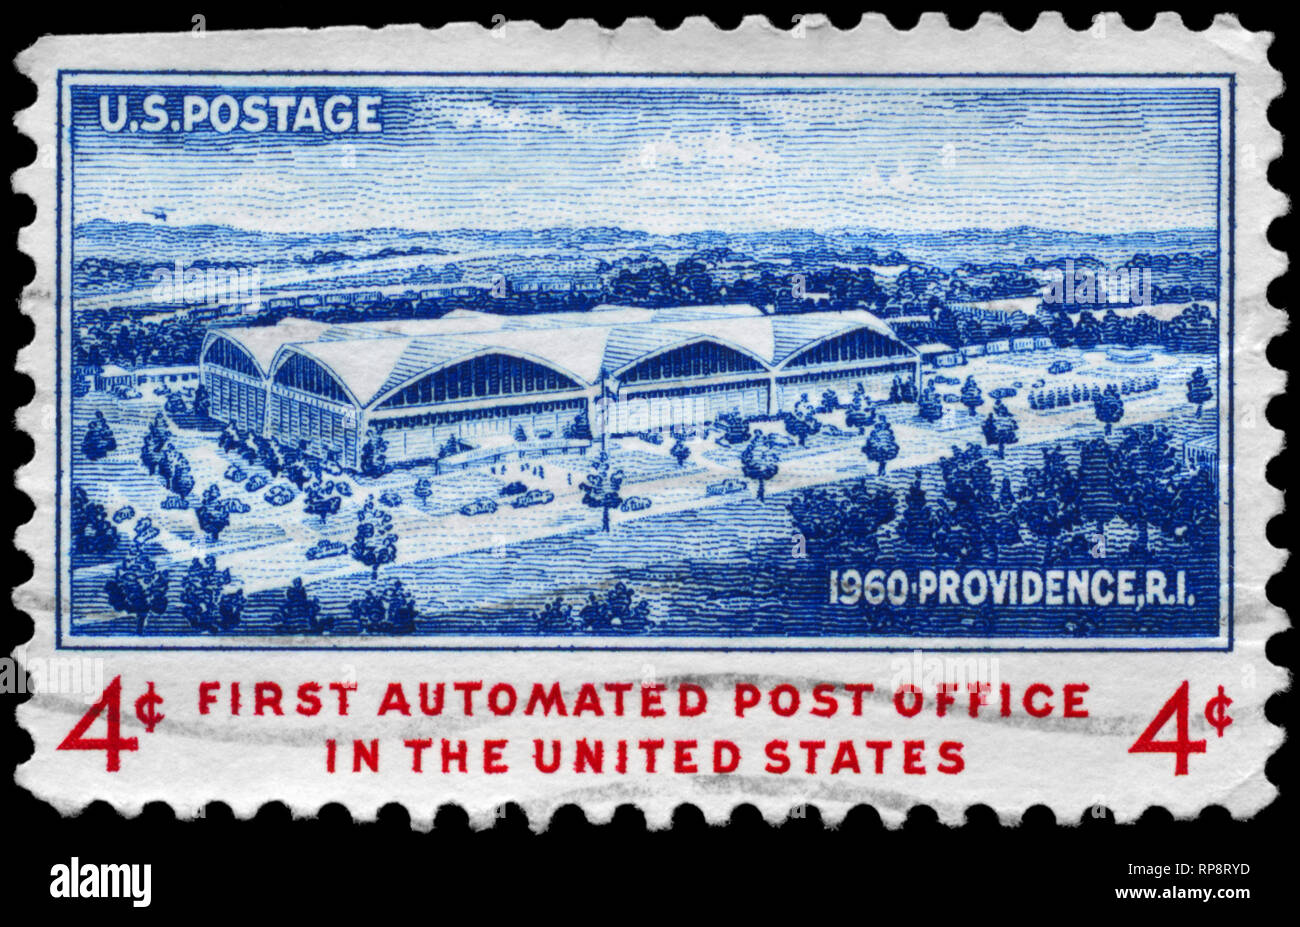 USA - VERS 1960 : timbre imprimé aux États-Unis montre l'architecte Scetch de nouveau bureau de poste, Providence, consacrée à l'ouverture de la 1re po automatisé, cria Banque D'Images